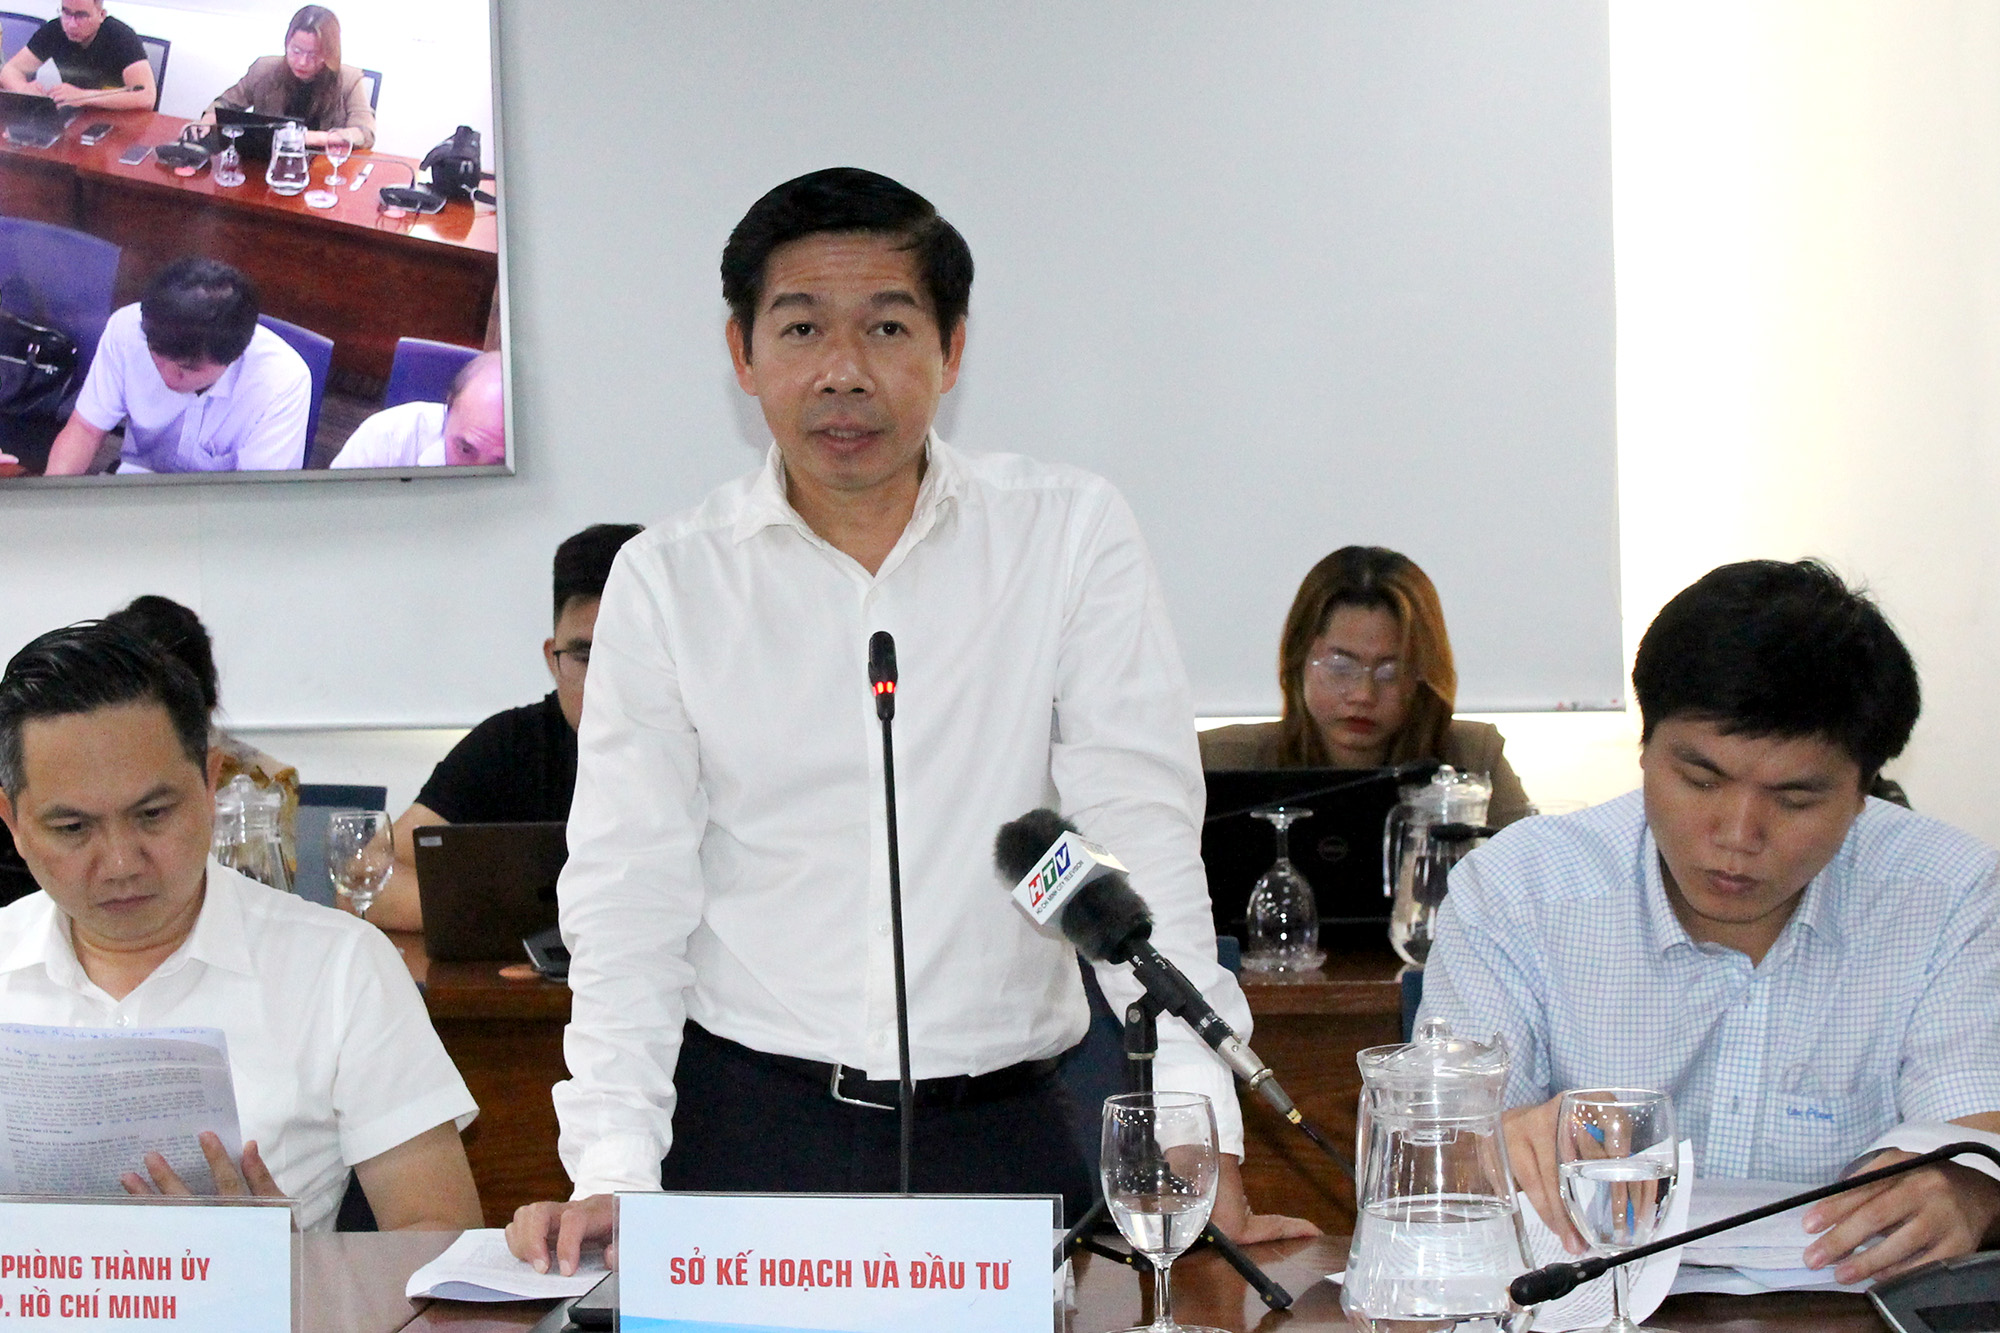 Đồng chí Đào Minh Chánh - Phó Giám đốc Sở Kế hoạch và đầu tư Thành phố trả lời tại buổi họp báo (Ảnh: H.Hào).